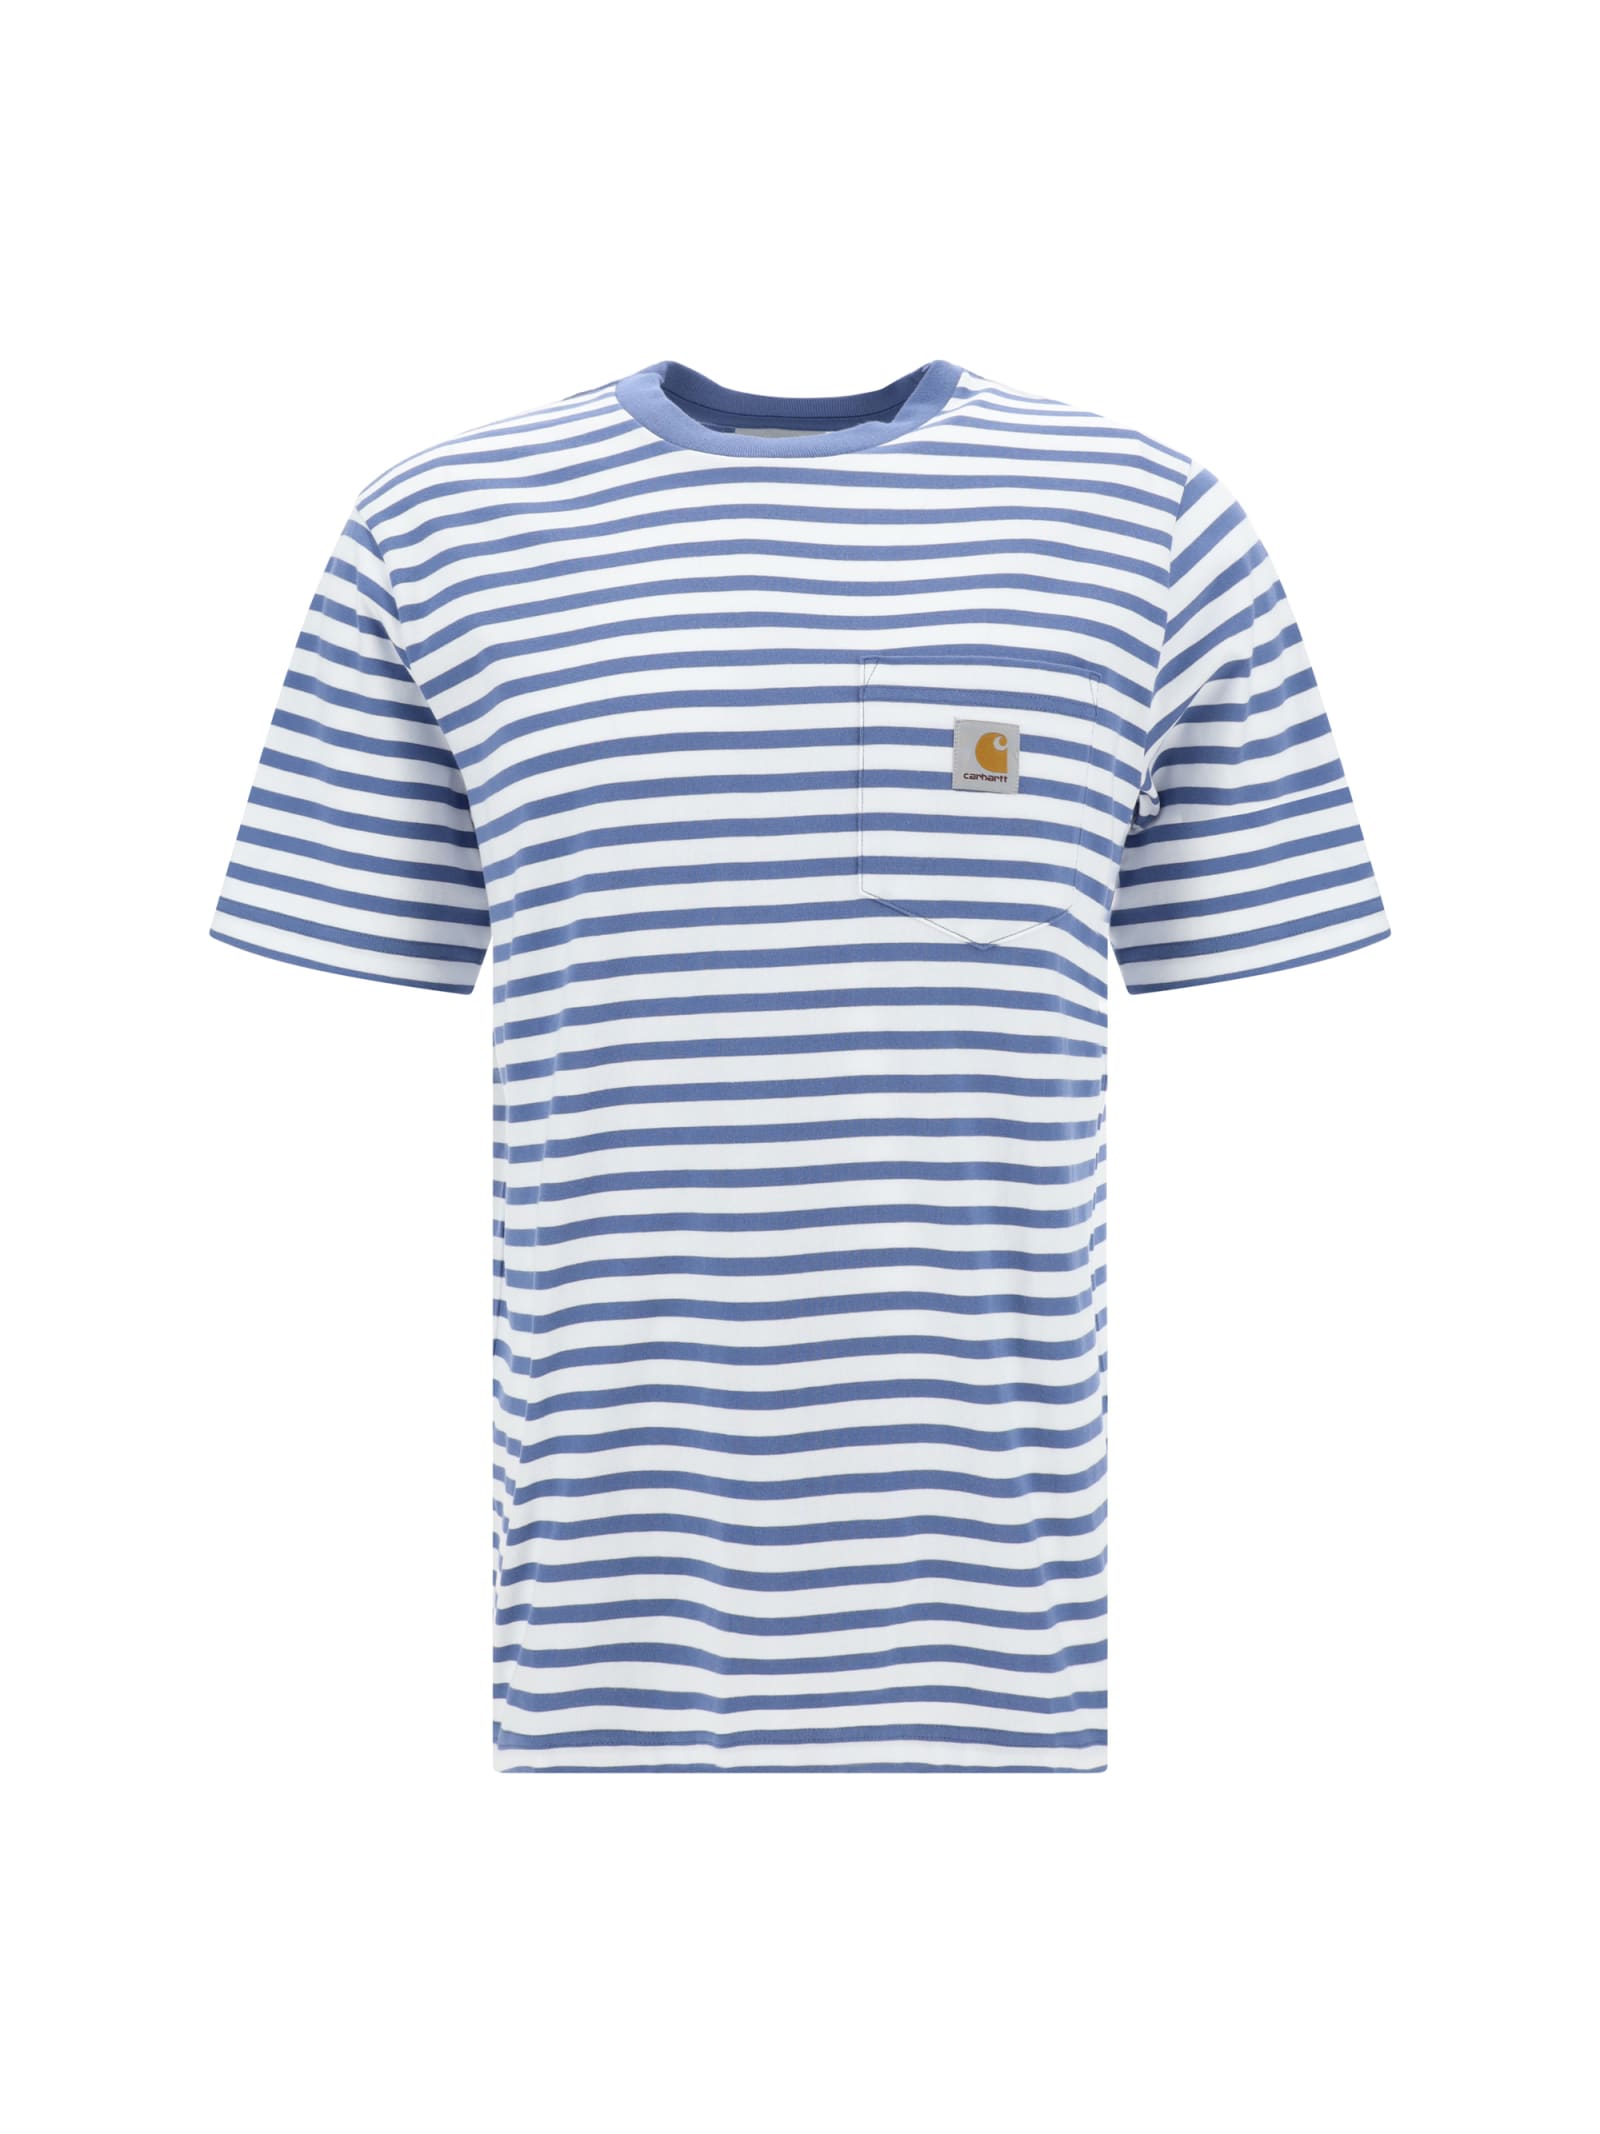 Shop Carhartt T-shirt In Seidler Stripe, Sorrent / White